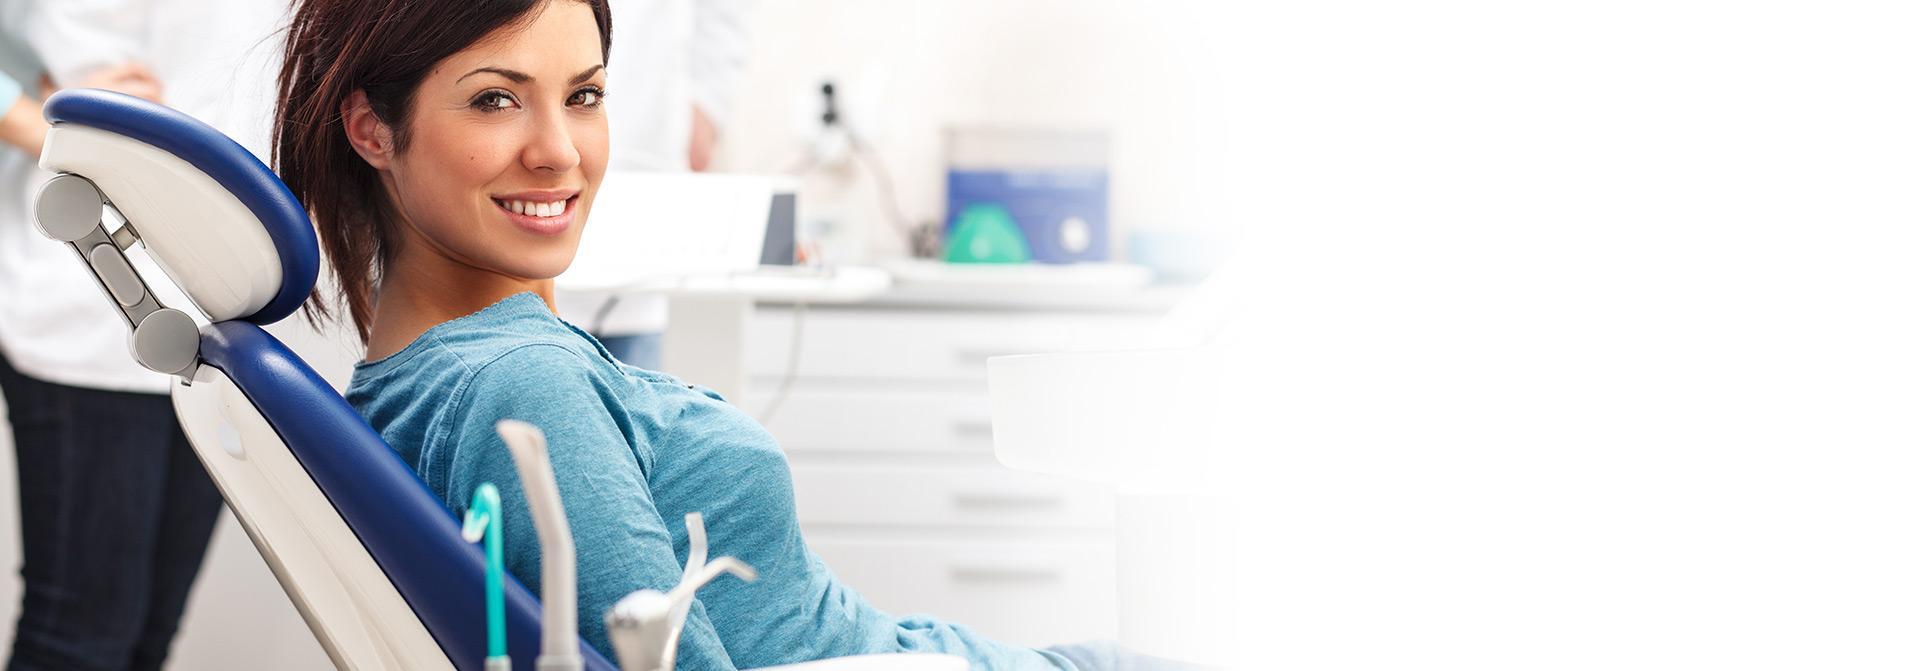 Uśmiechnięta pacjentka w gabinecie dentystycznym